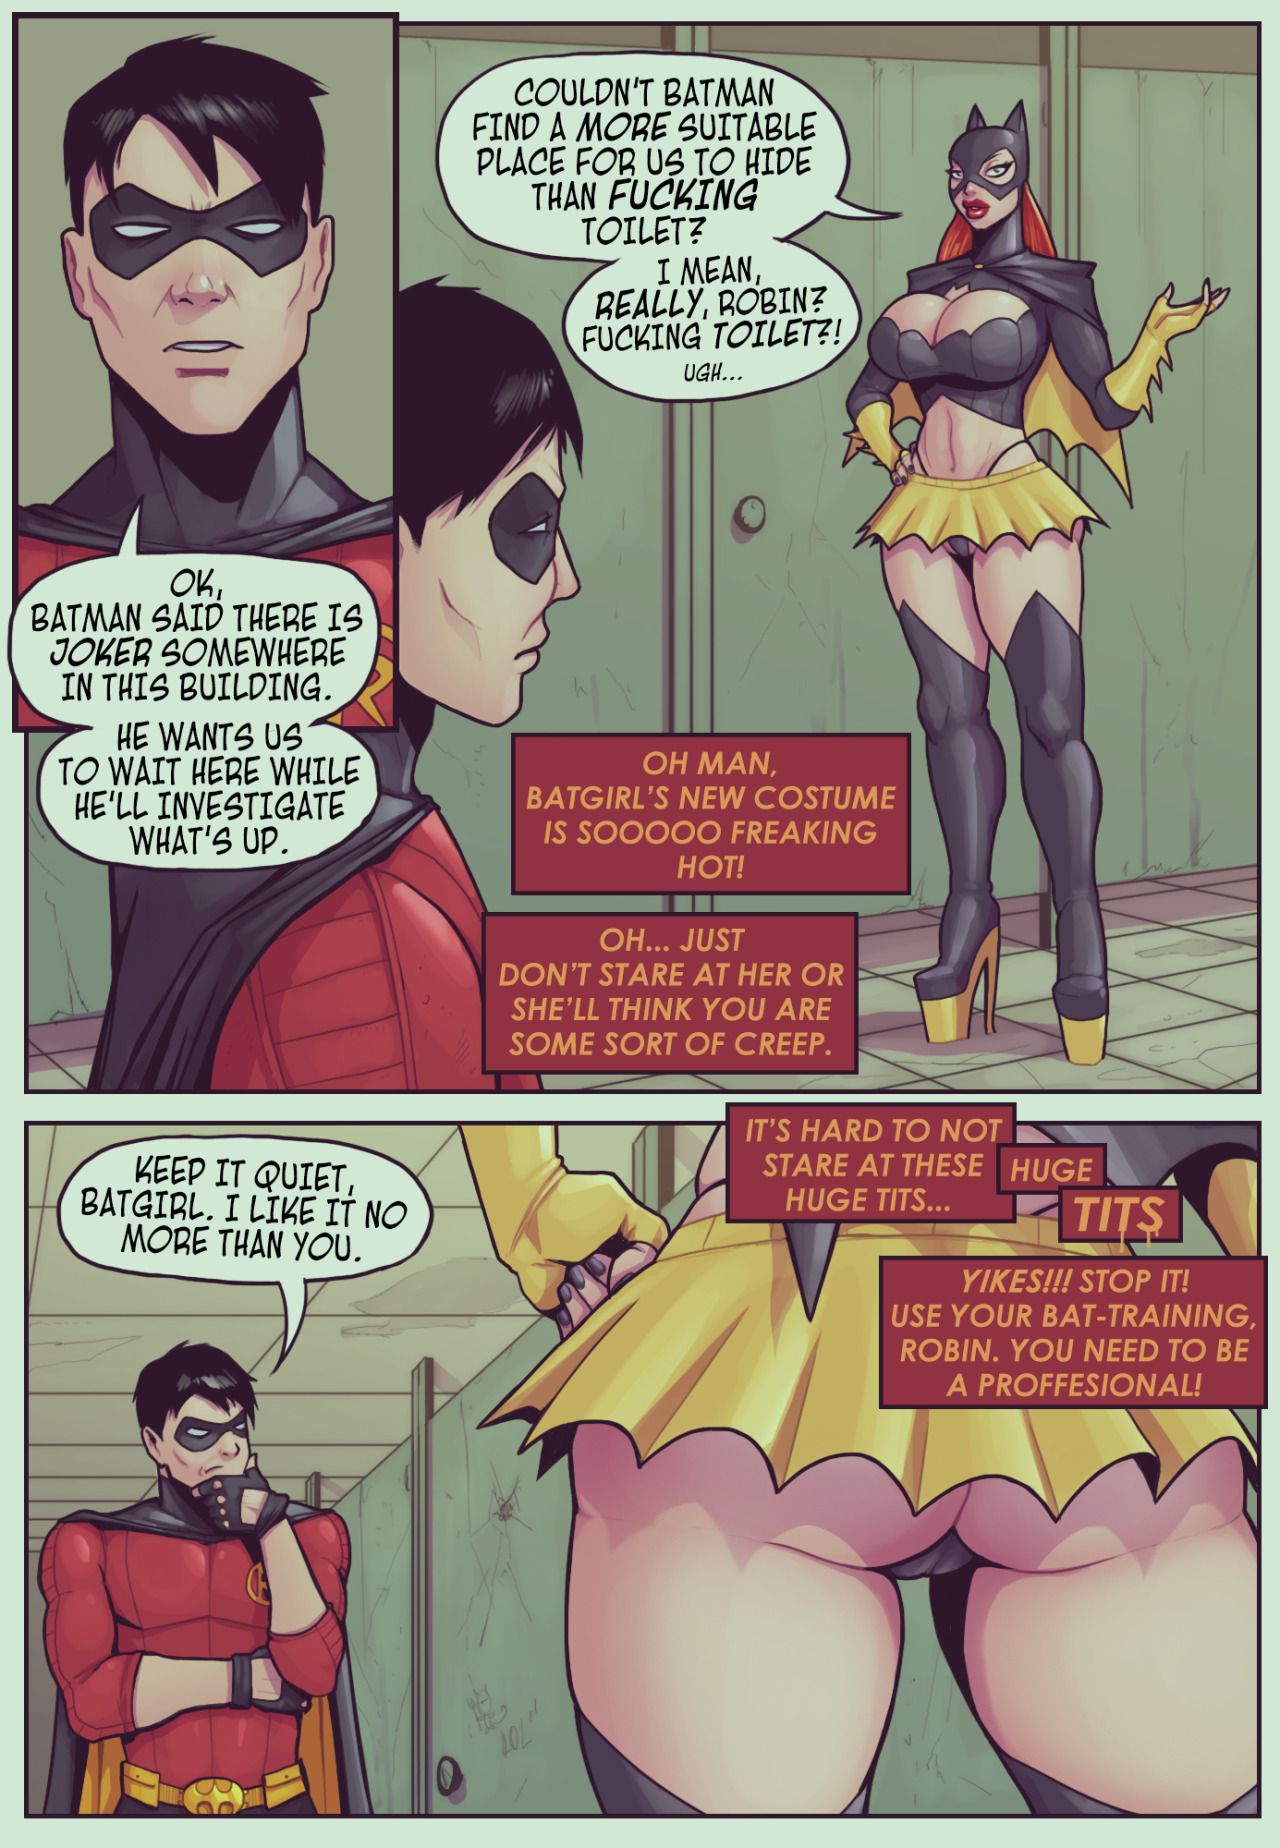 [DevilHS] Ruined Gotham: Batgirl loves Robin (ongoing) 2